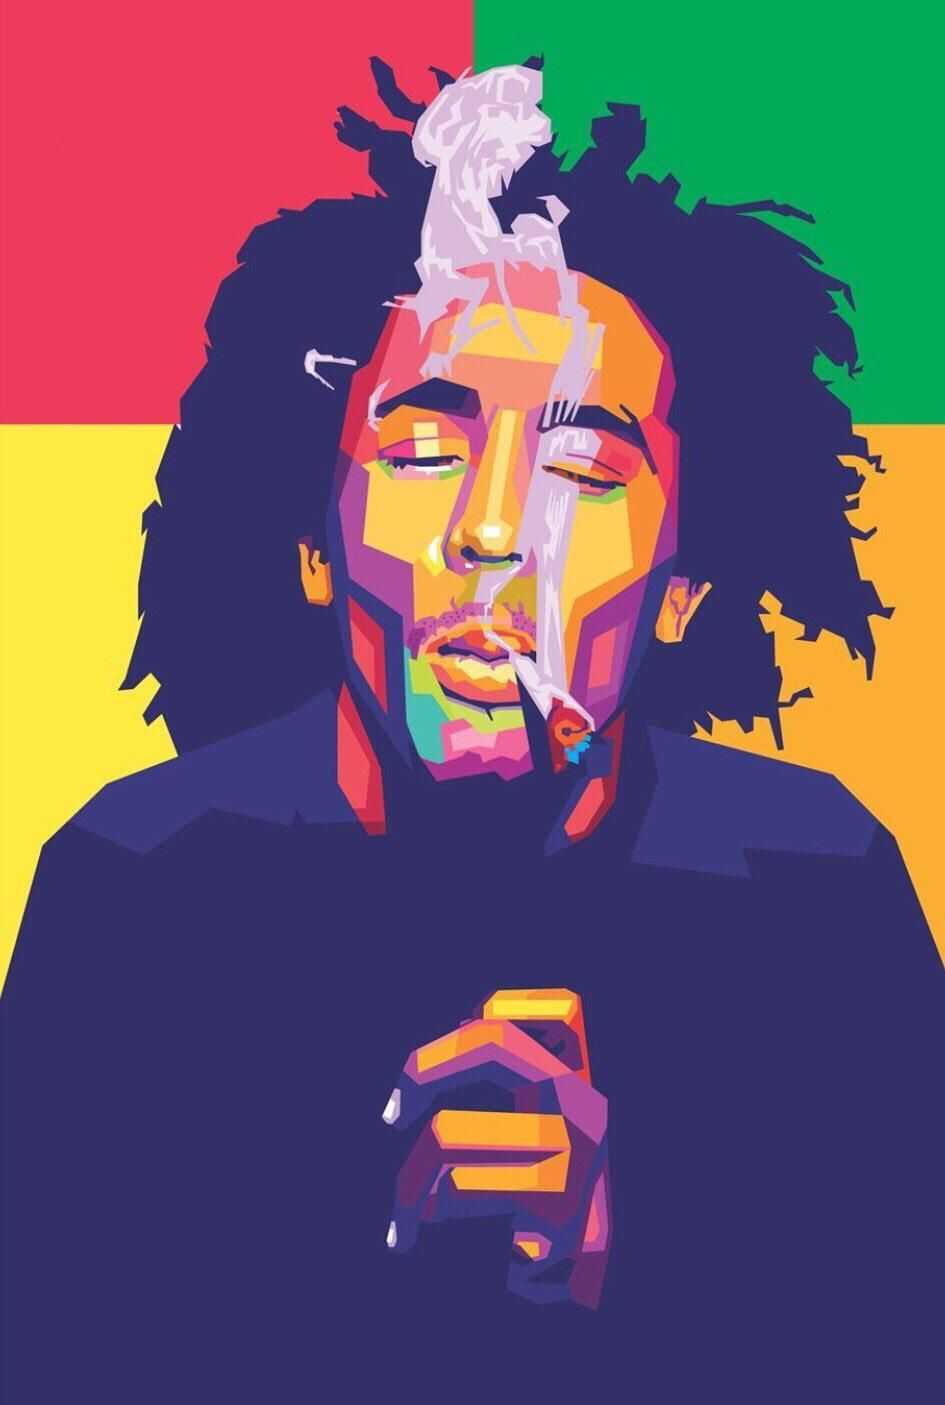 Bob Marley Background 1